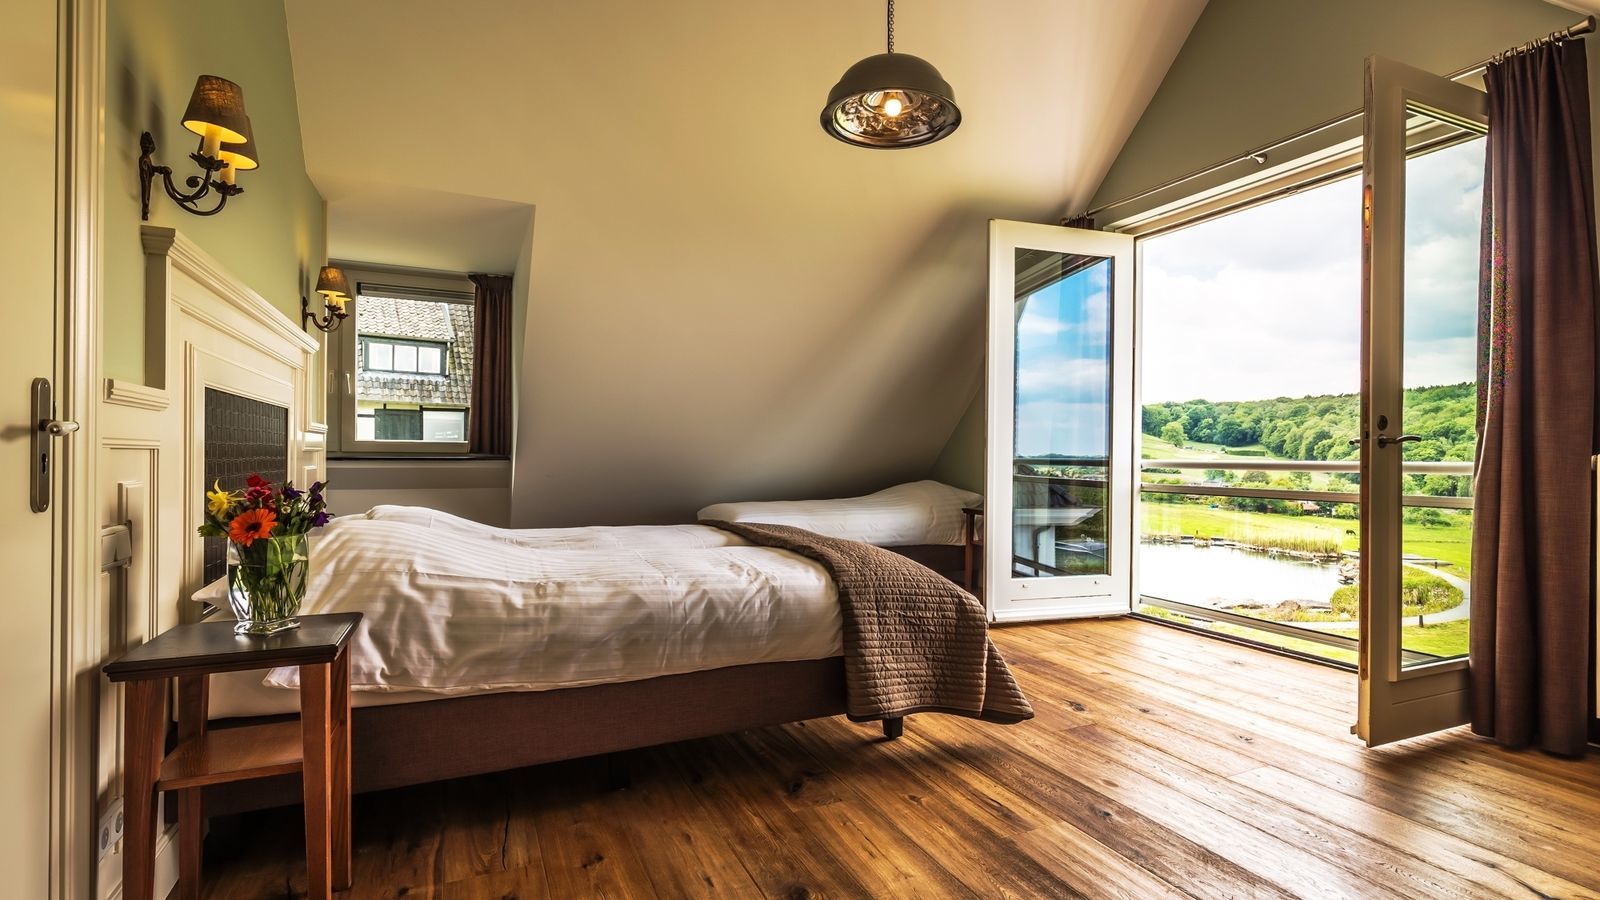 Villapparte-Special Villa's-luxe vakantiehuis voor 21 personen-binnen zwembad-sauna-groepsaccommodatie-Zuid Limburg-romantische slaapkamer